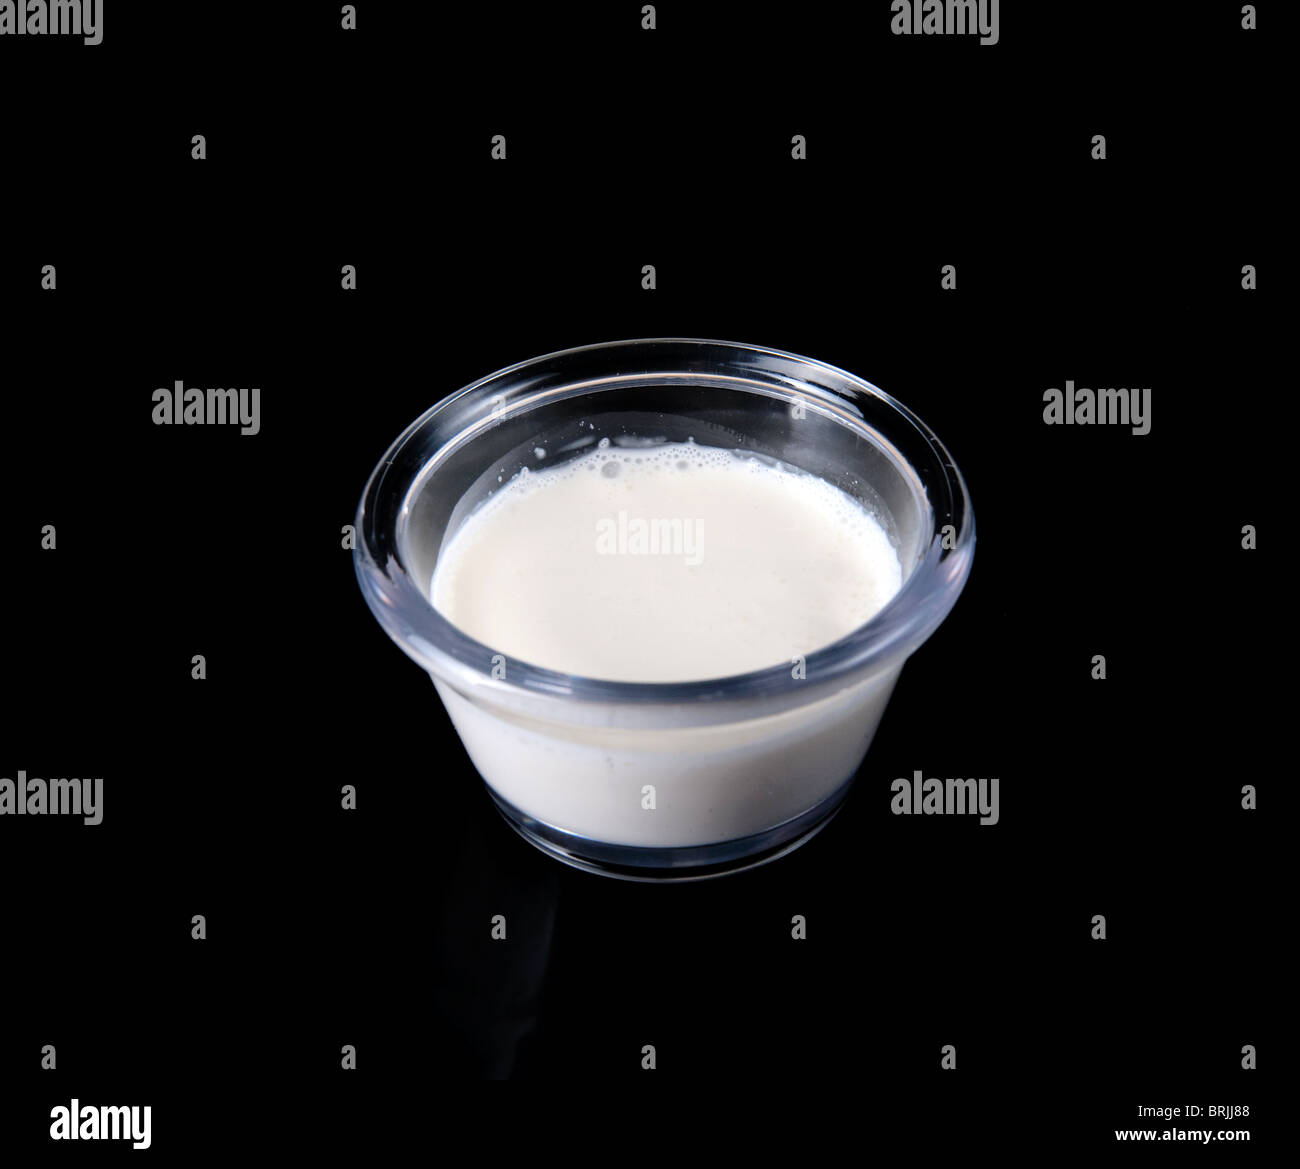 Photo gros plan de crème blanche dans une petite tasse ingrédients claire sur un fond noir Banque D'Images